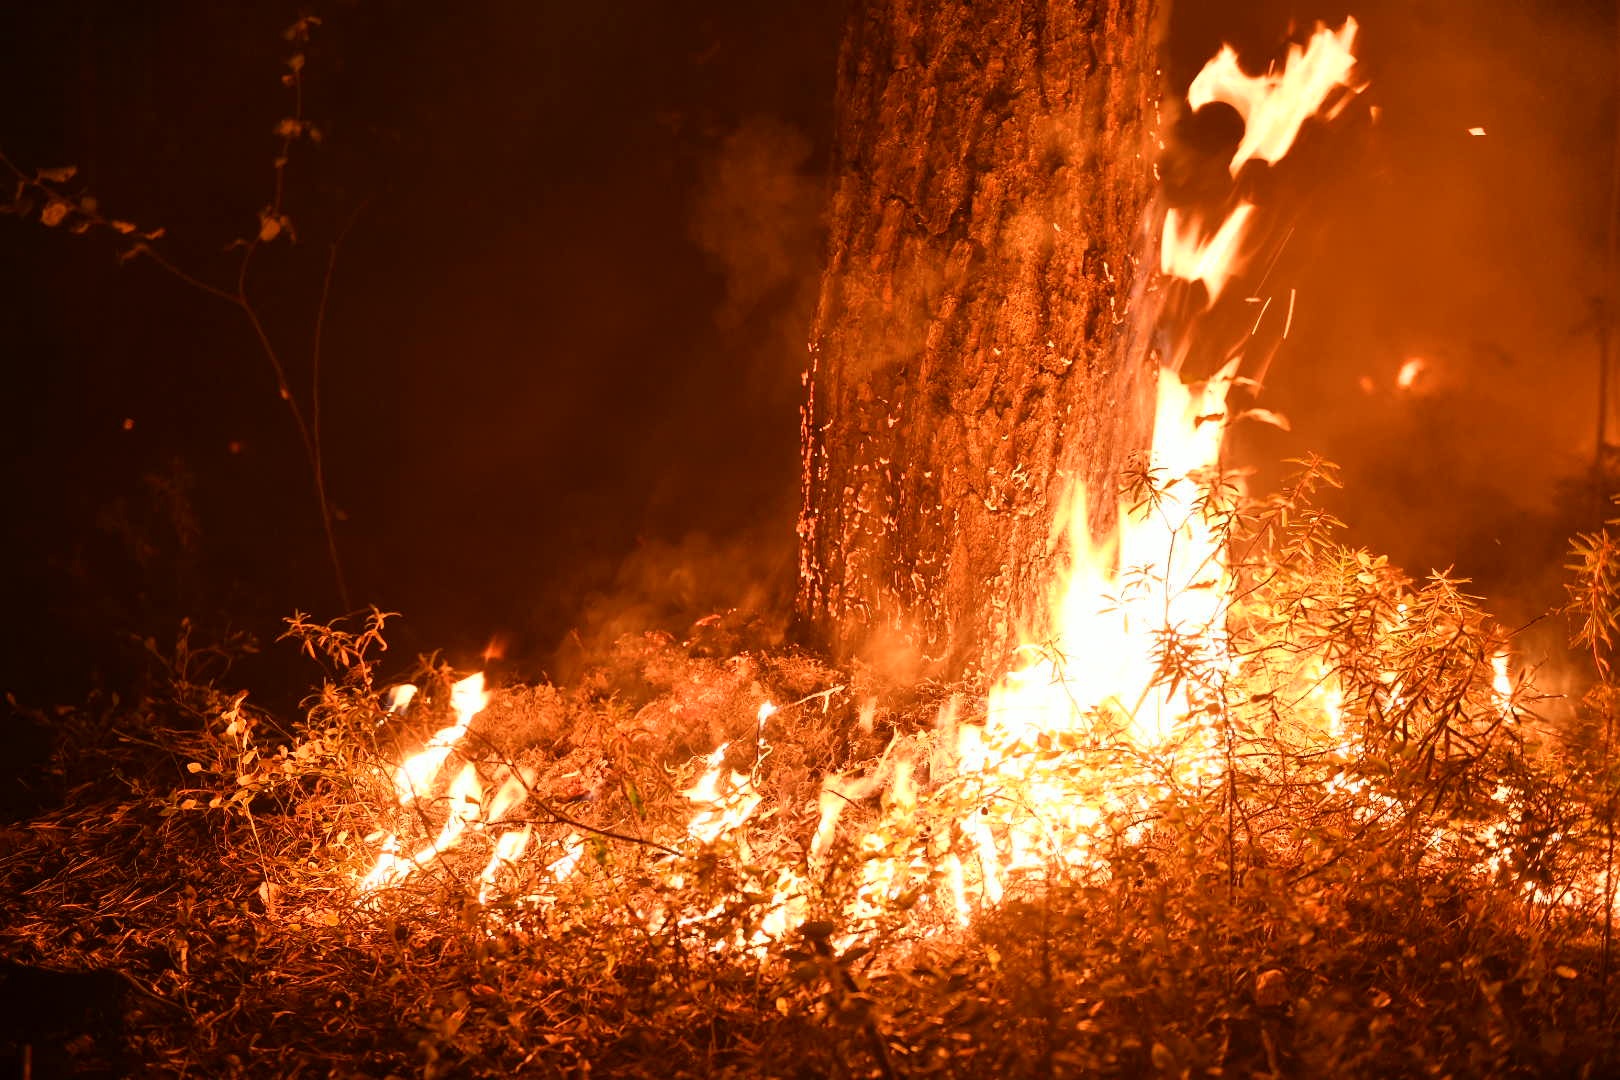 Под Екатеринбургом горит лес: огненный фоторепортаж из сердца пожара